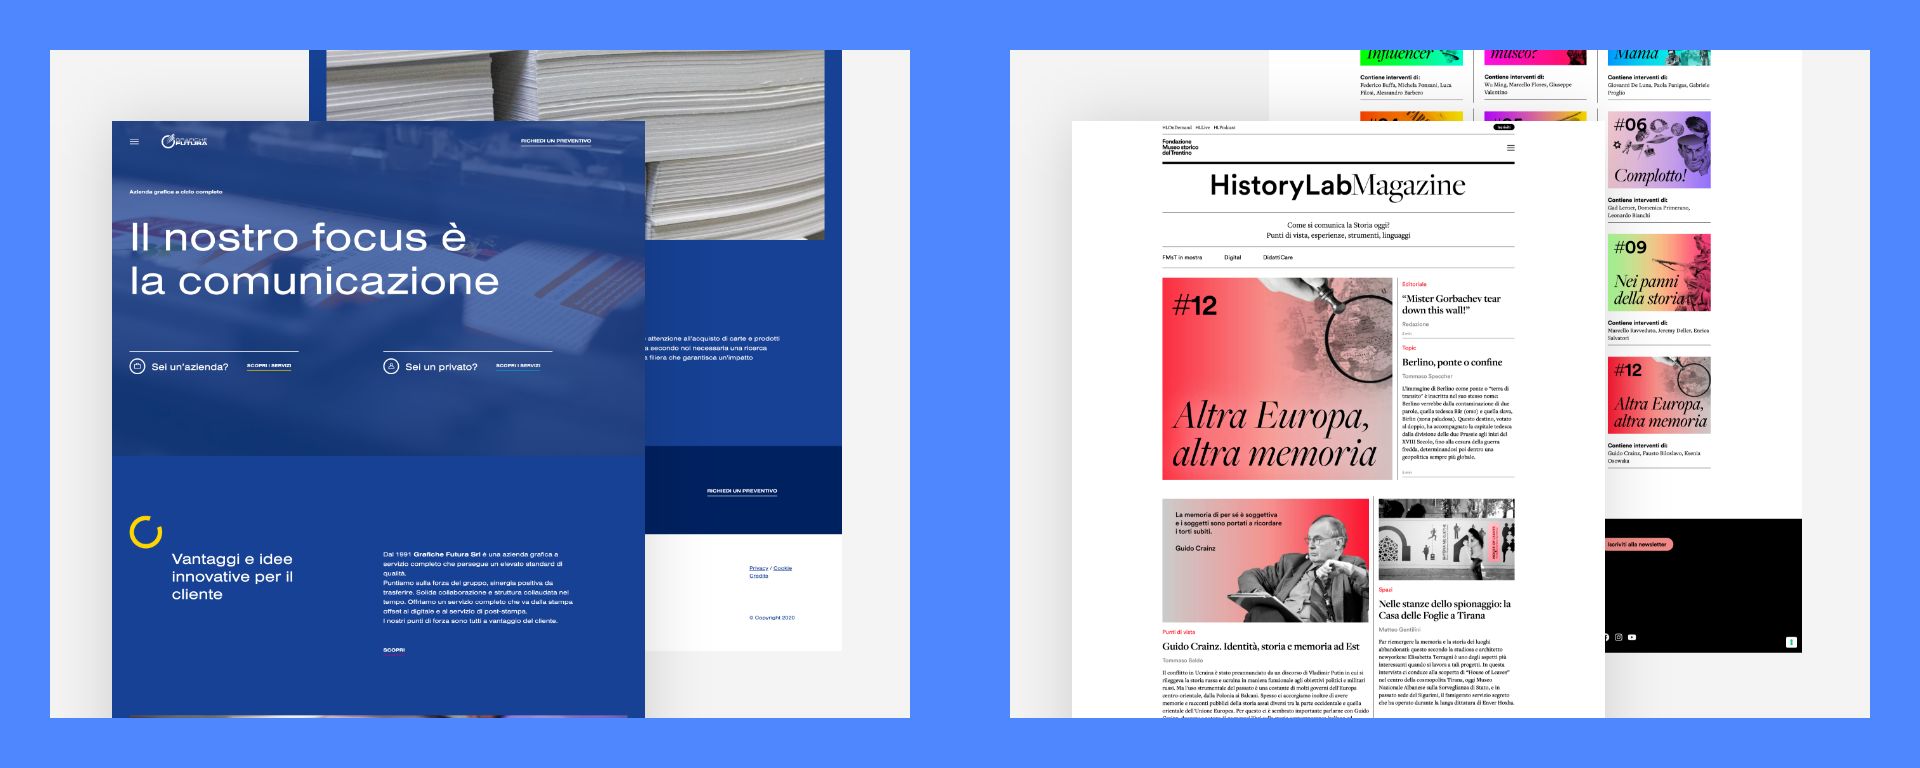 Siti web Trento: Grafiche Futura e HistoryLab